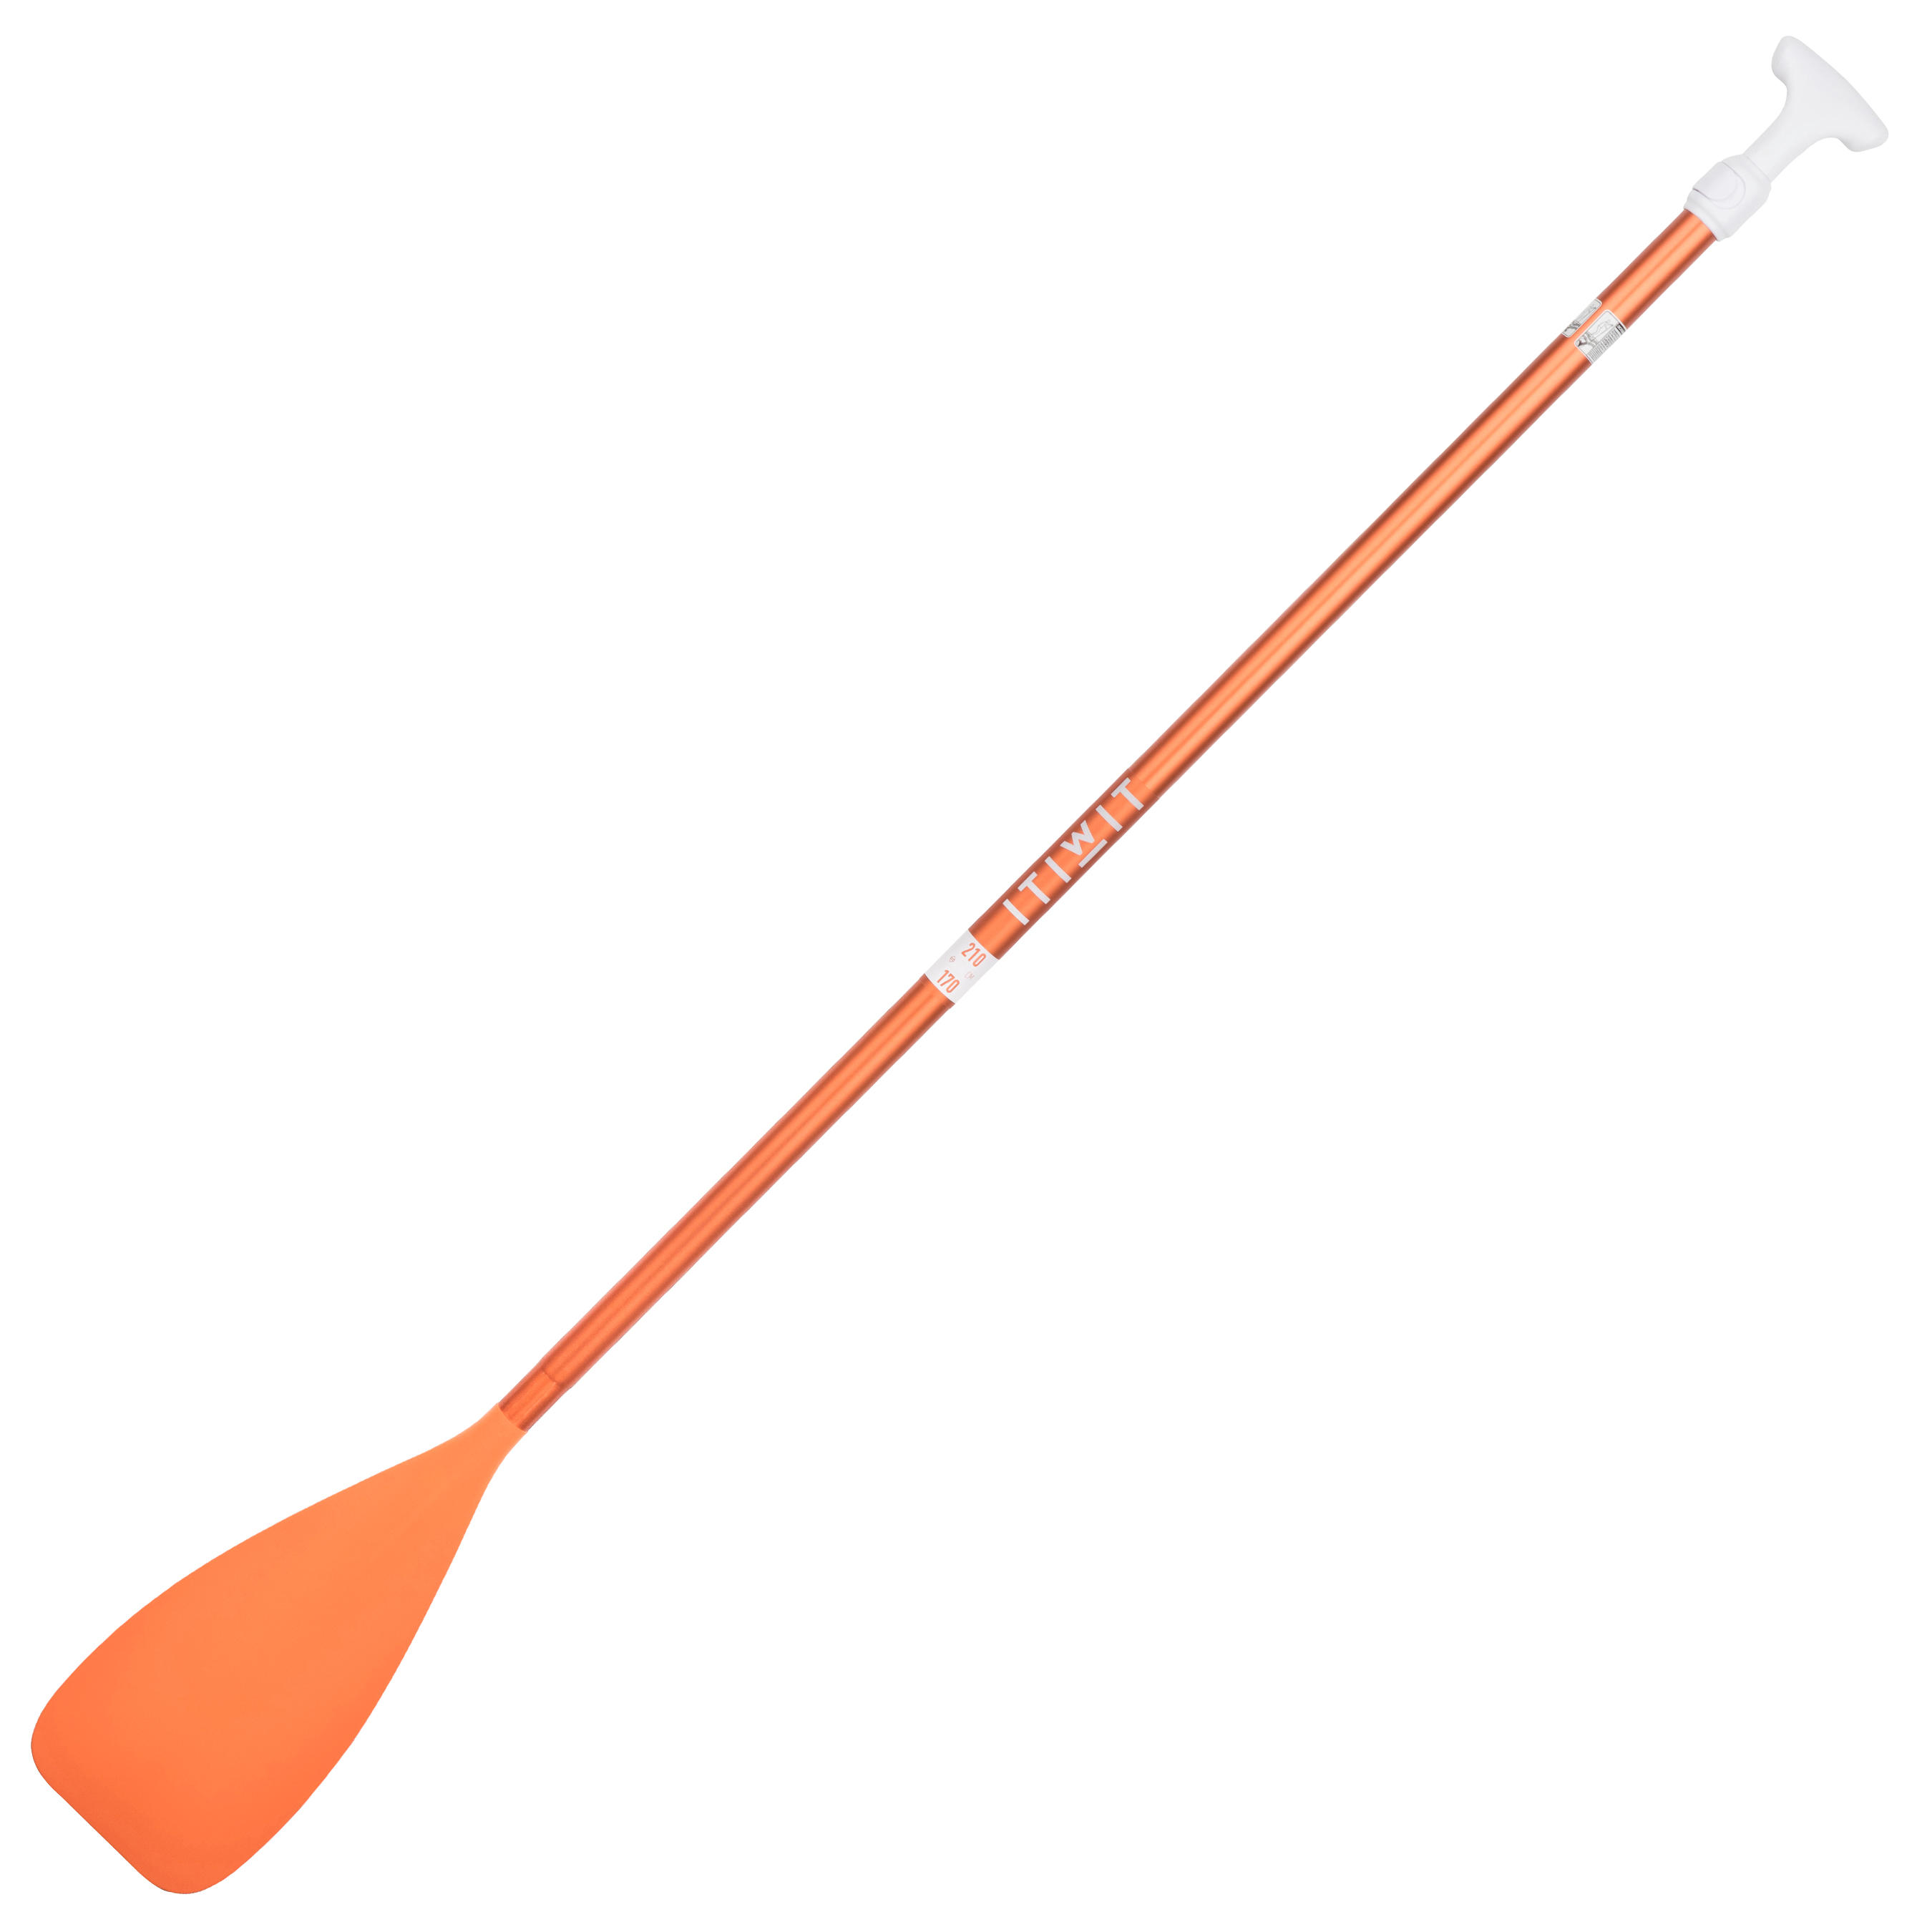 ITIWIT 100 Adjustable SUP Paddle 170-210 cm - Orange